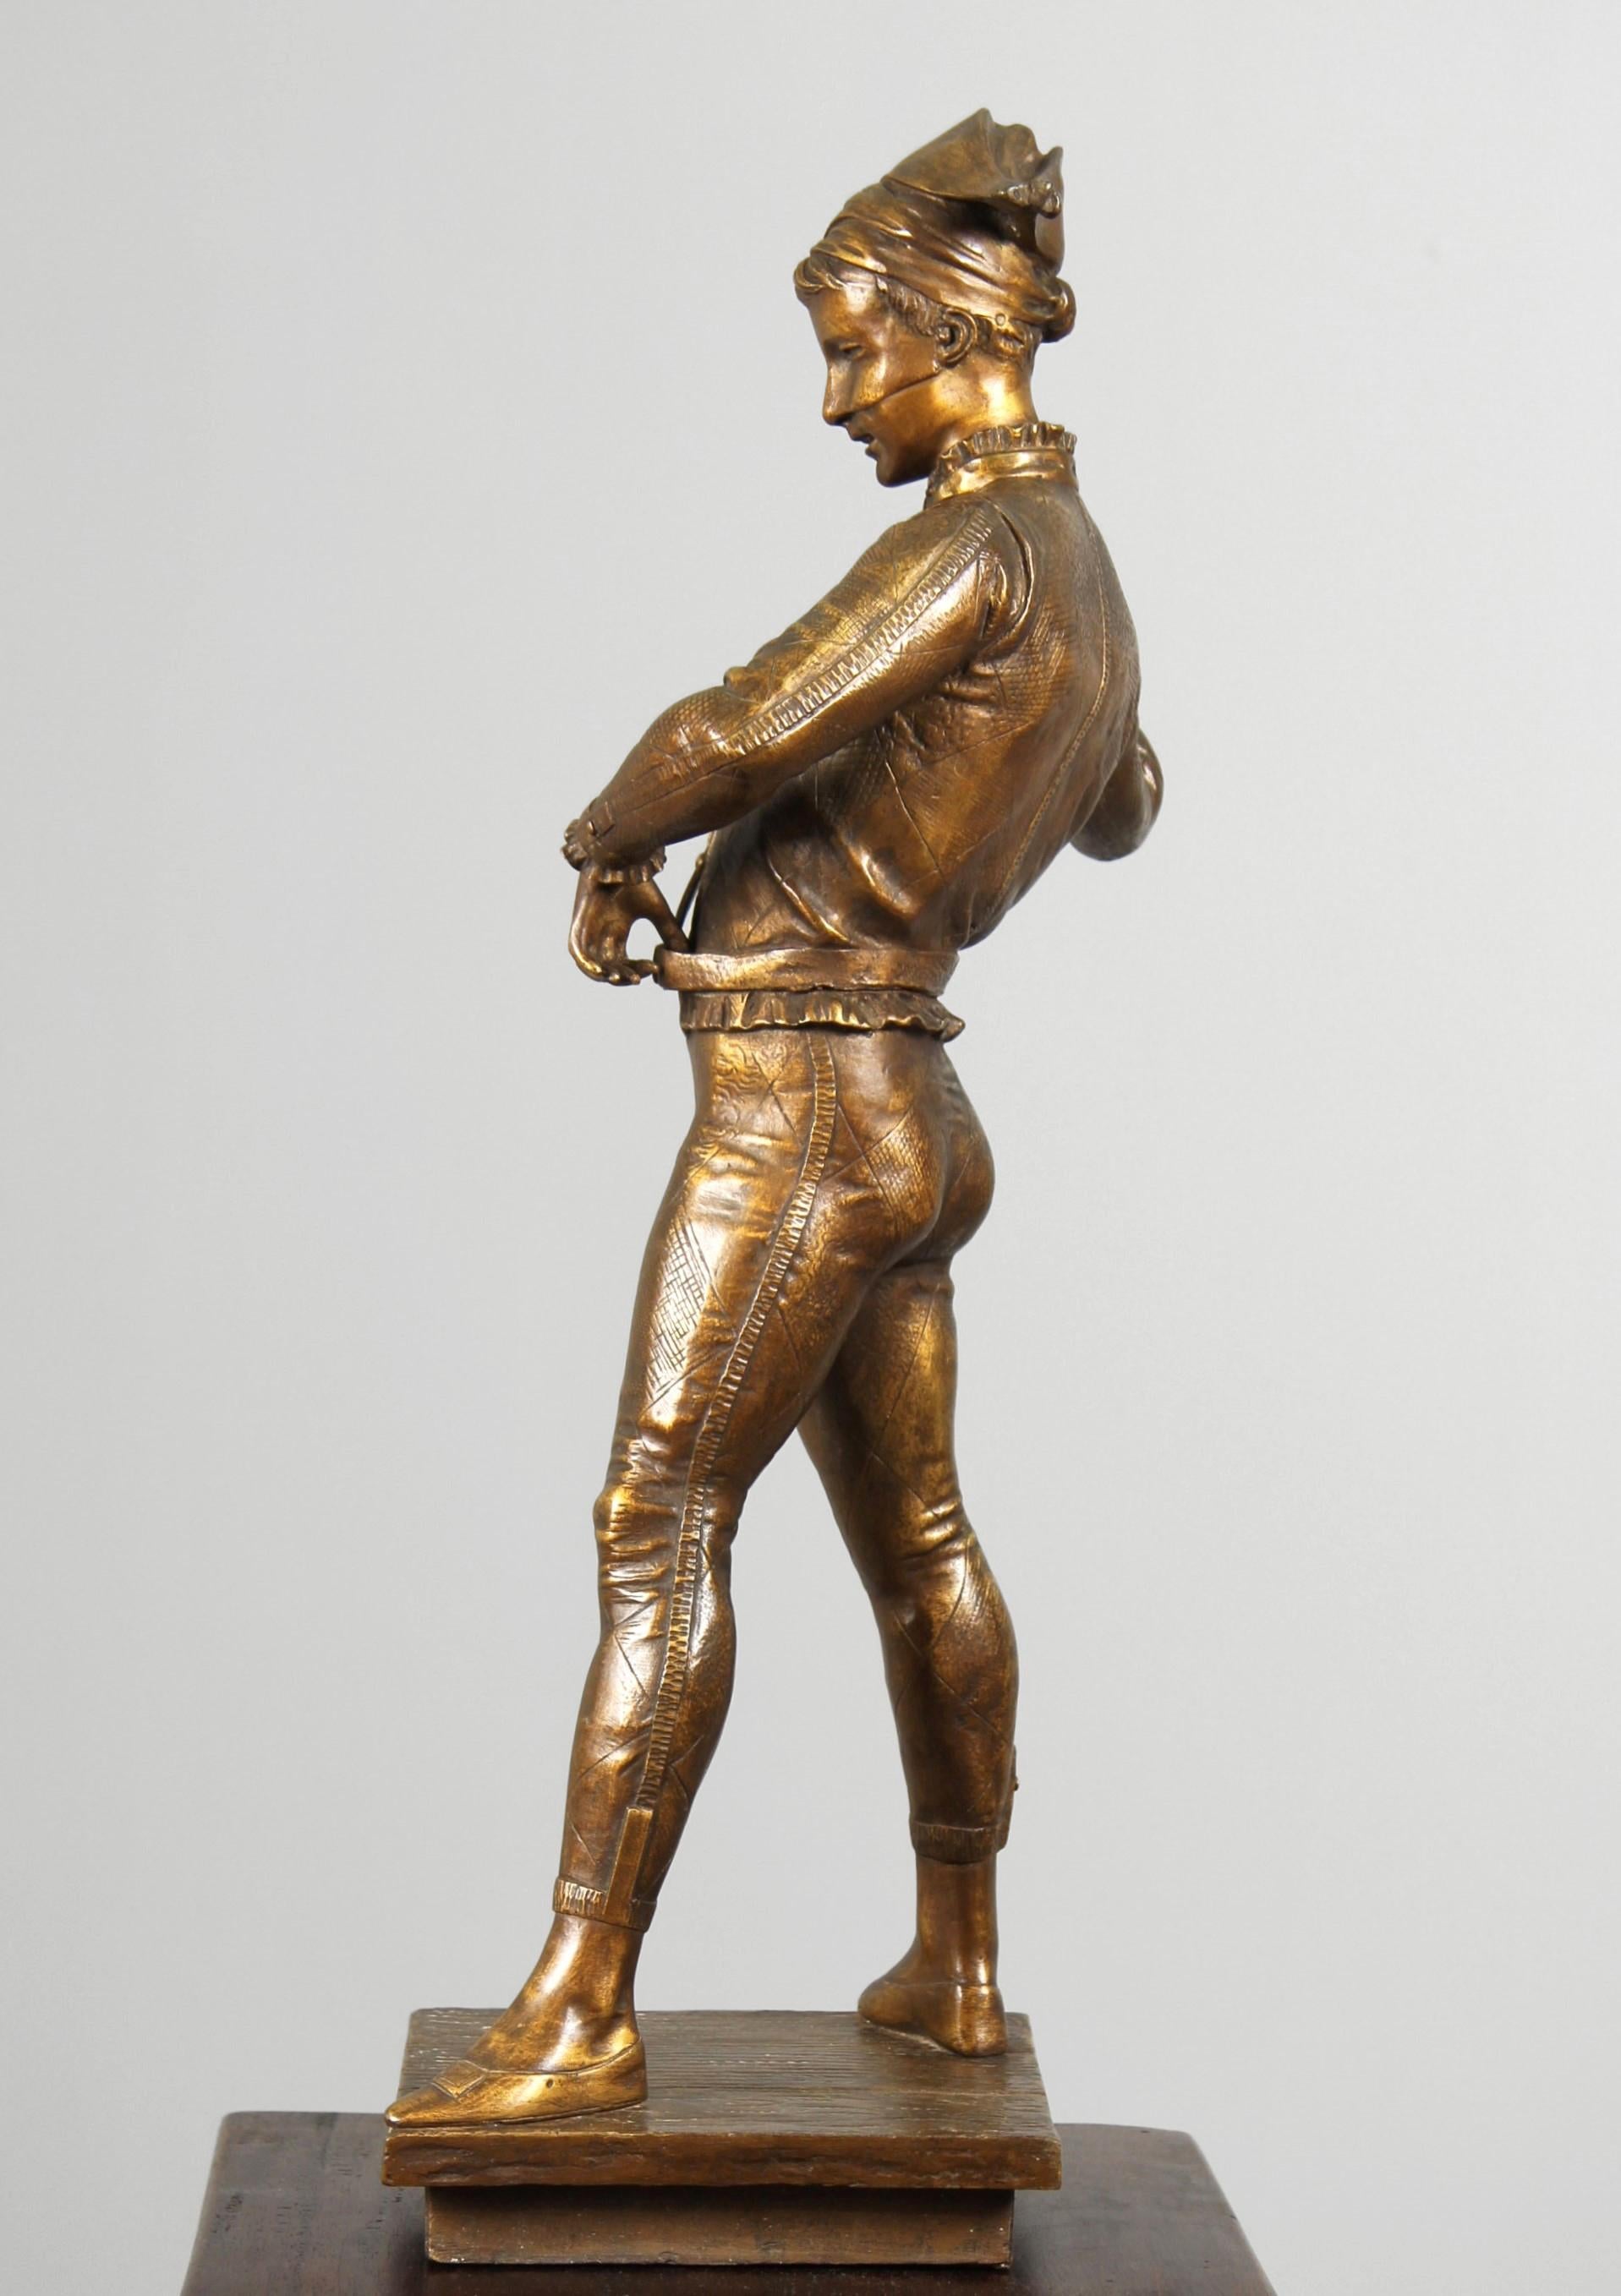 Paul Dubois - L'Arlequin

France
bronze
vers 1880

Dimensions : H x L x P : 59 x 19 x 18 cm : H x L x P : 59 x 19 x 18 cm

Description :
Figure debout sur une base presque carrée. La base, qui a l'apparence de planches de bois disposées en ligne,